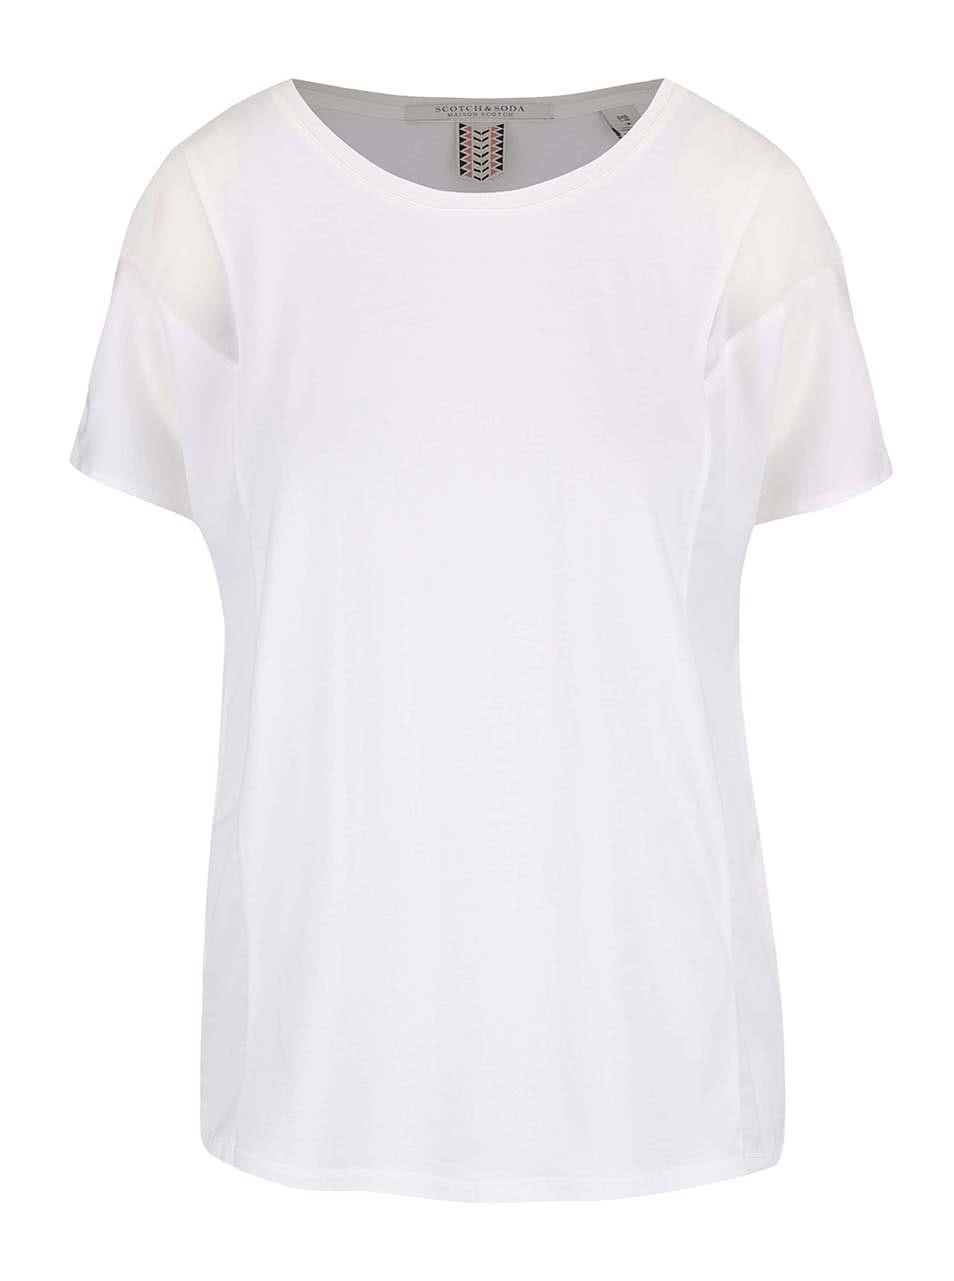 Bílé tričko s transparentními detaily Maison Scotch